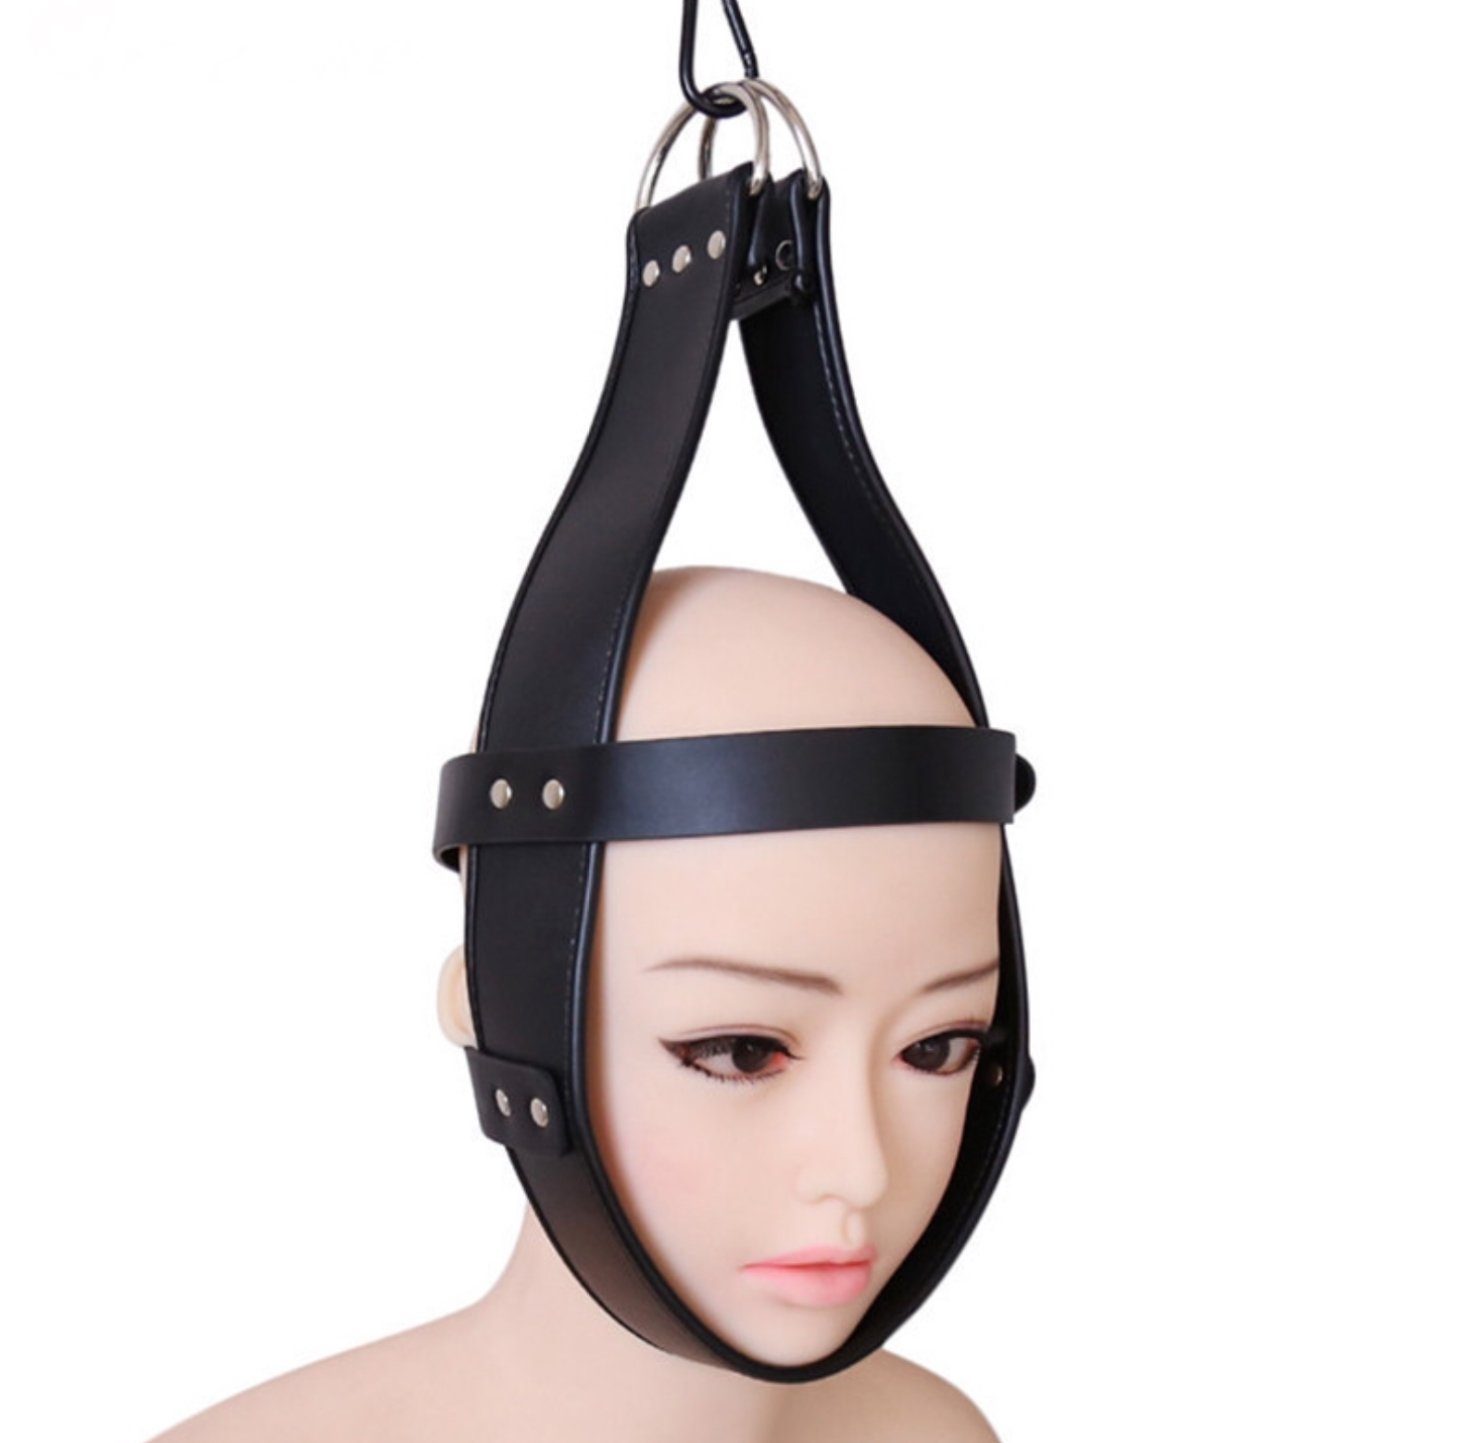 Sandritas Erotik-Maske Kopffessel zum aufhängen aus Kunstleder und Metall Bondage BDSM